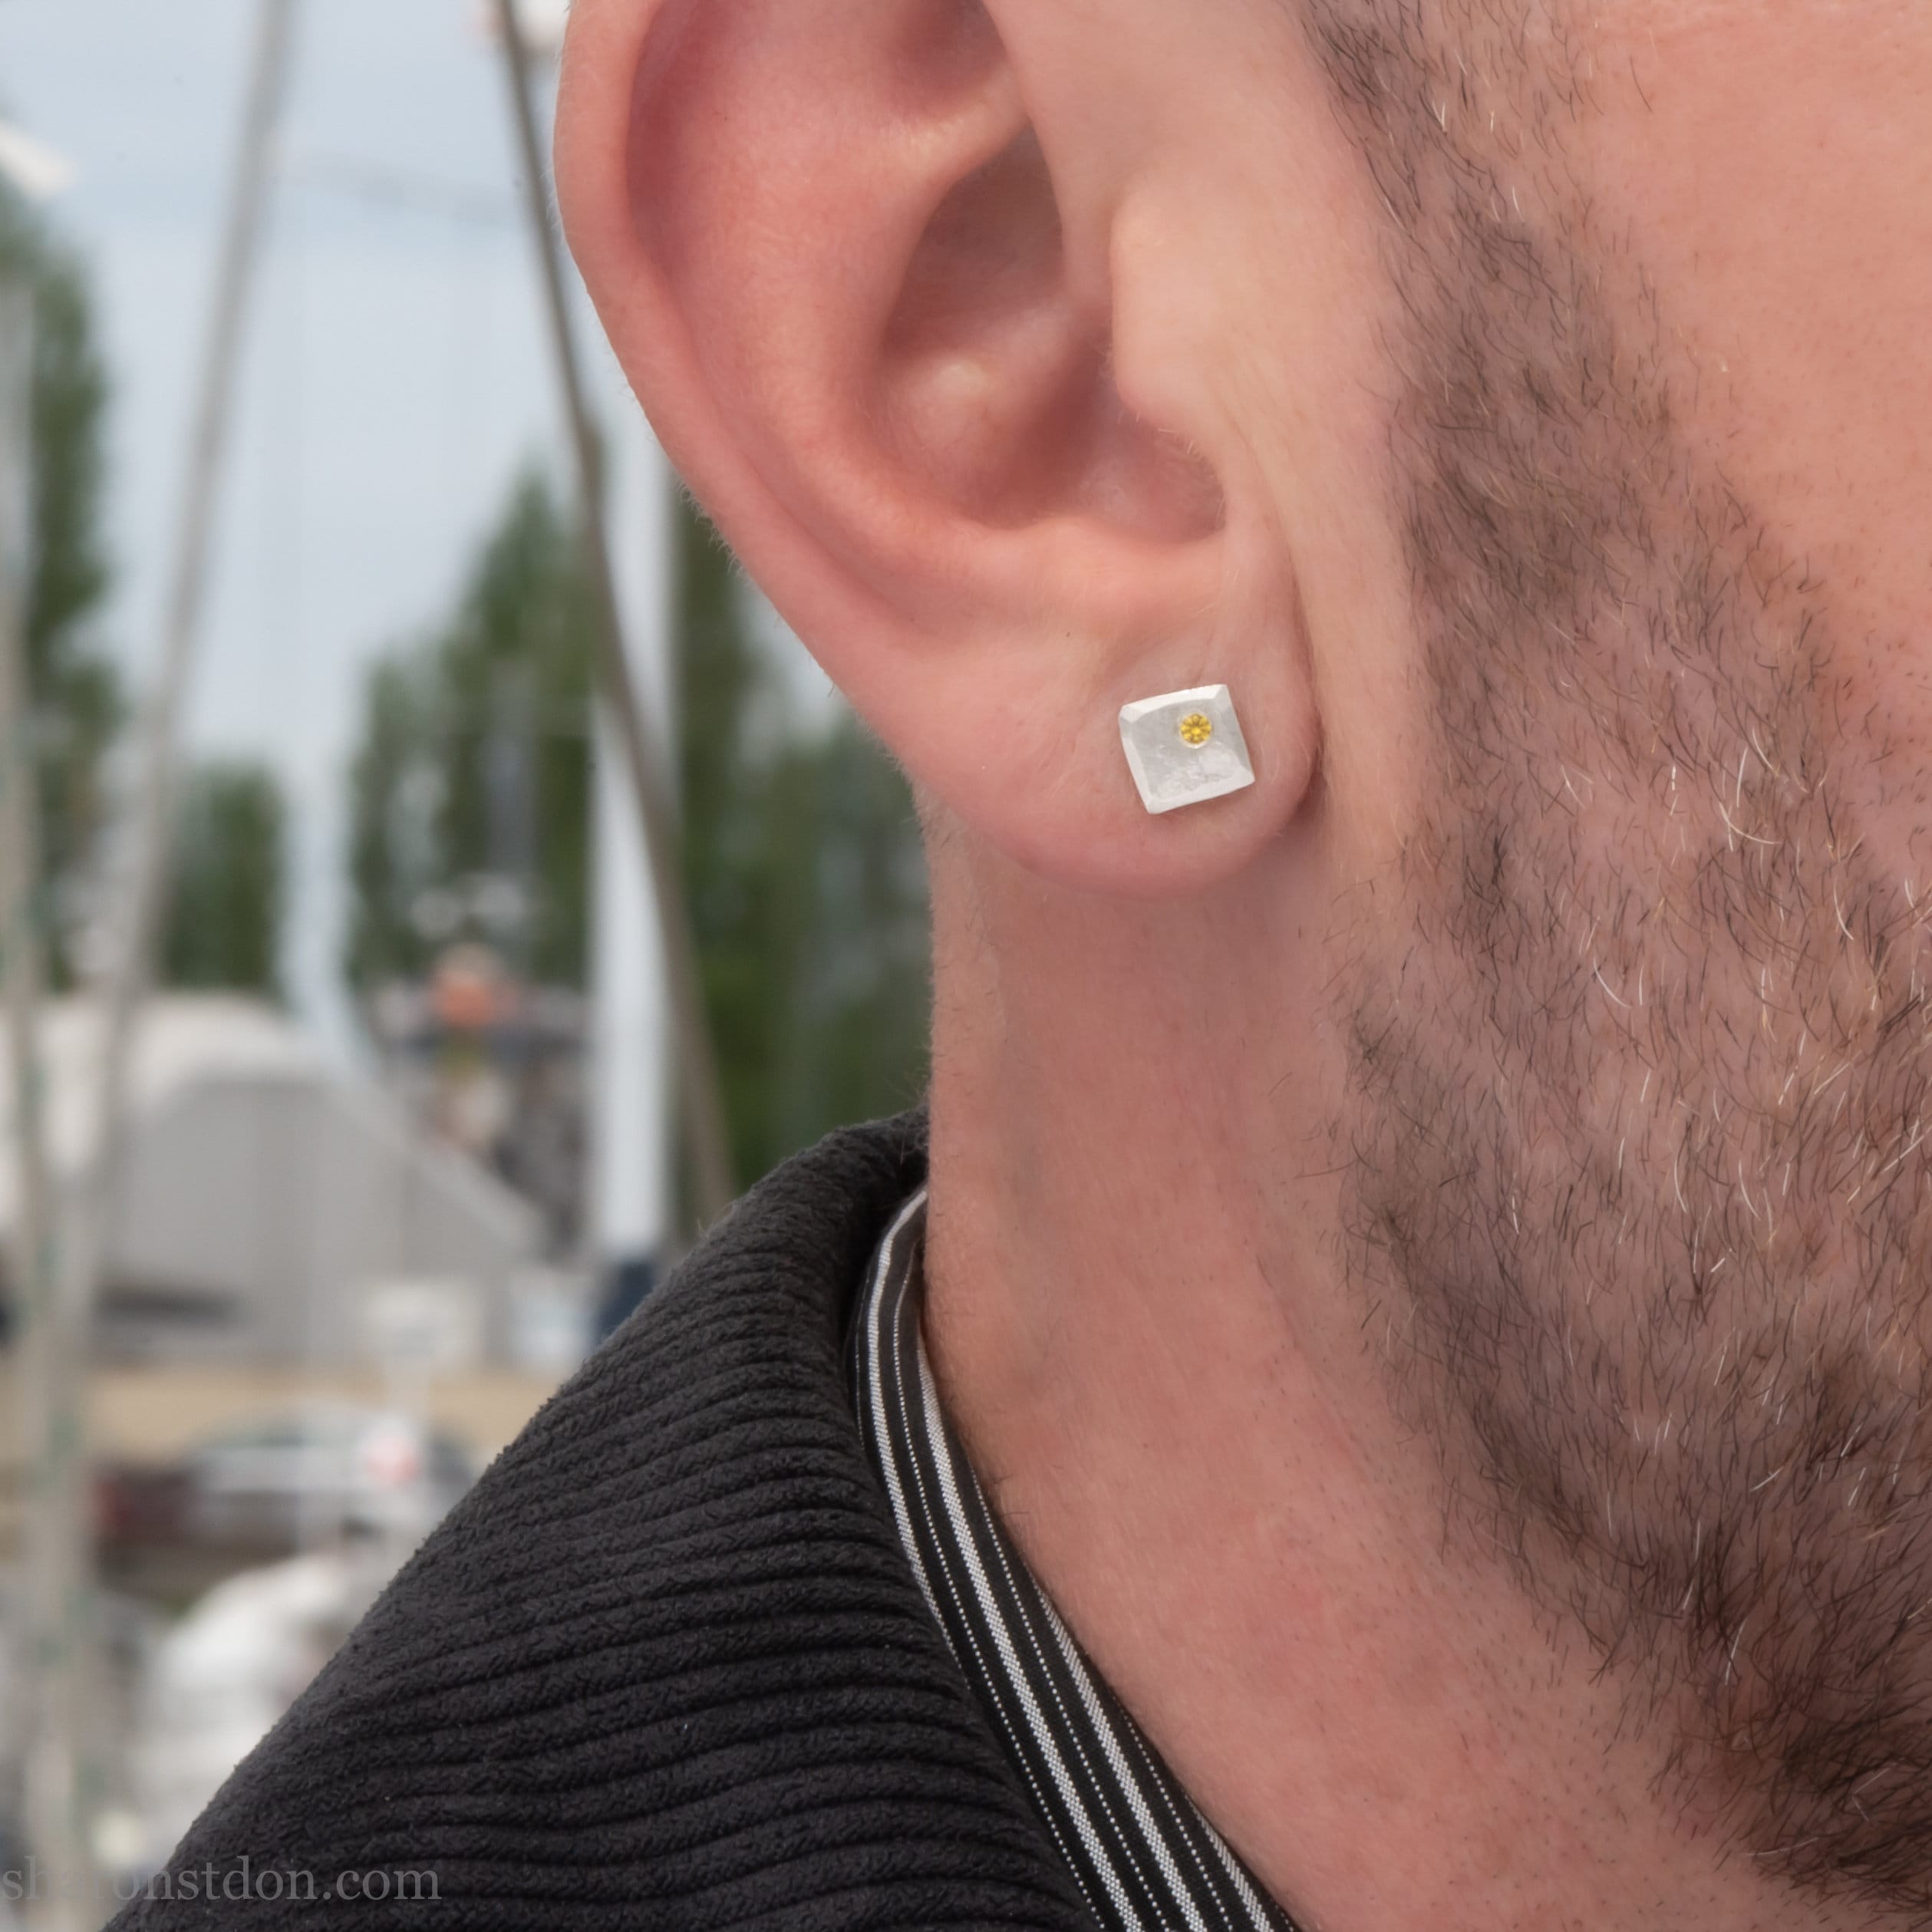 Silver Square Diamond Stud Earrings - Mens Earrings | By Twistedpendant